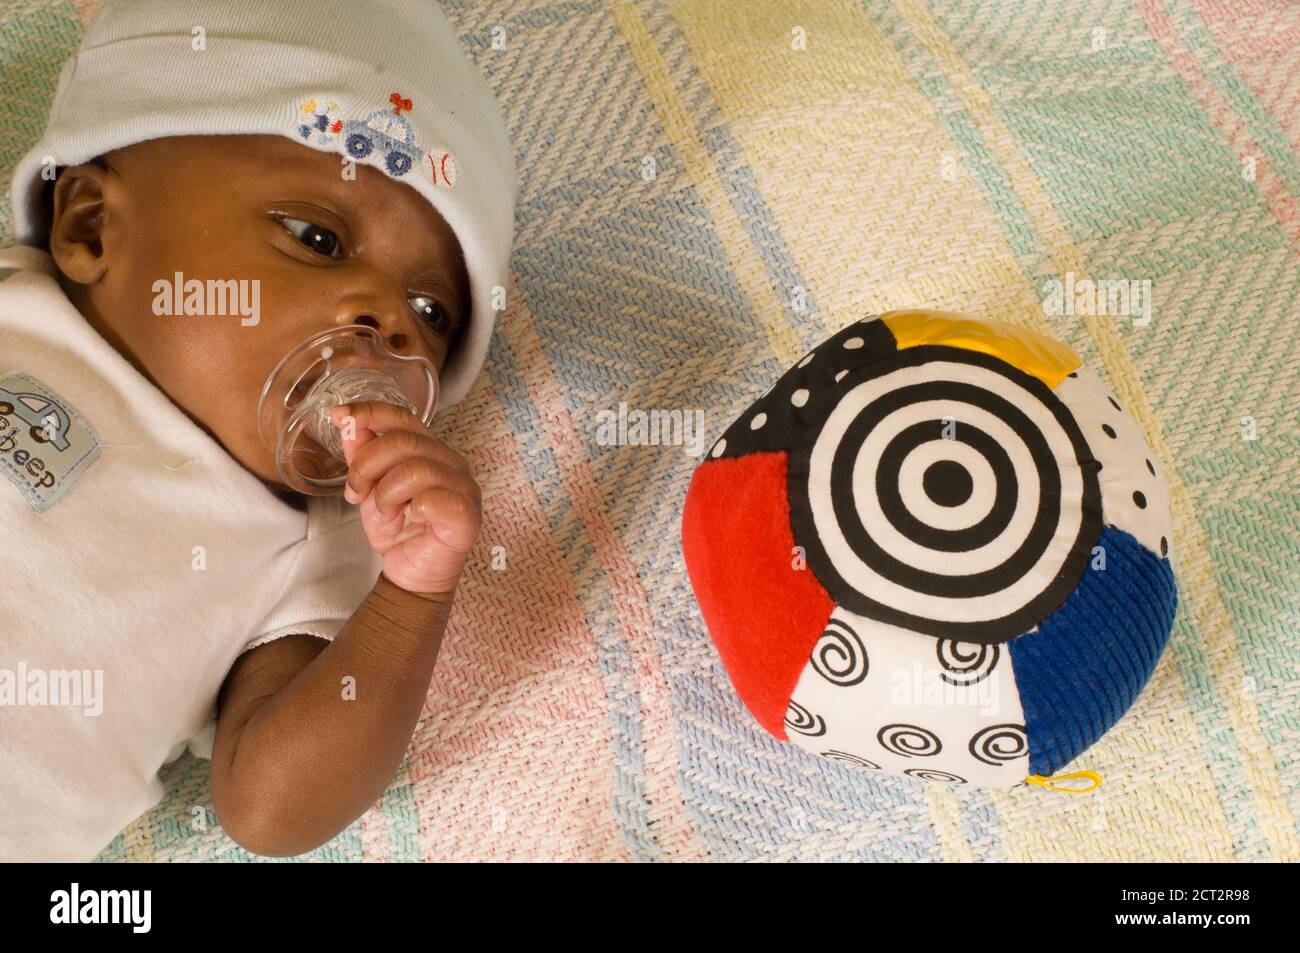 bambino neonato di 6 settimane un mese di allarme prematuro guardando un giocattolo con motivo bianco e nero ad alto contrasto, indossando il cappuccio e succhiando il succhietto Foto Stock